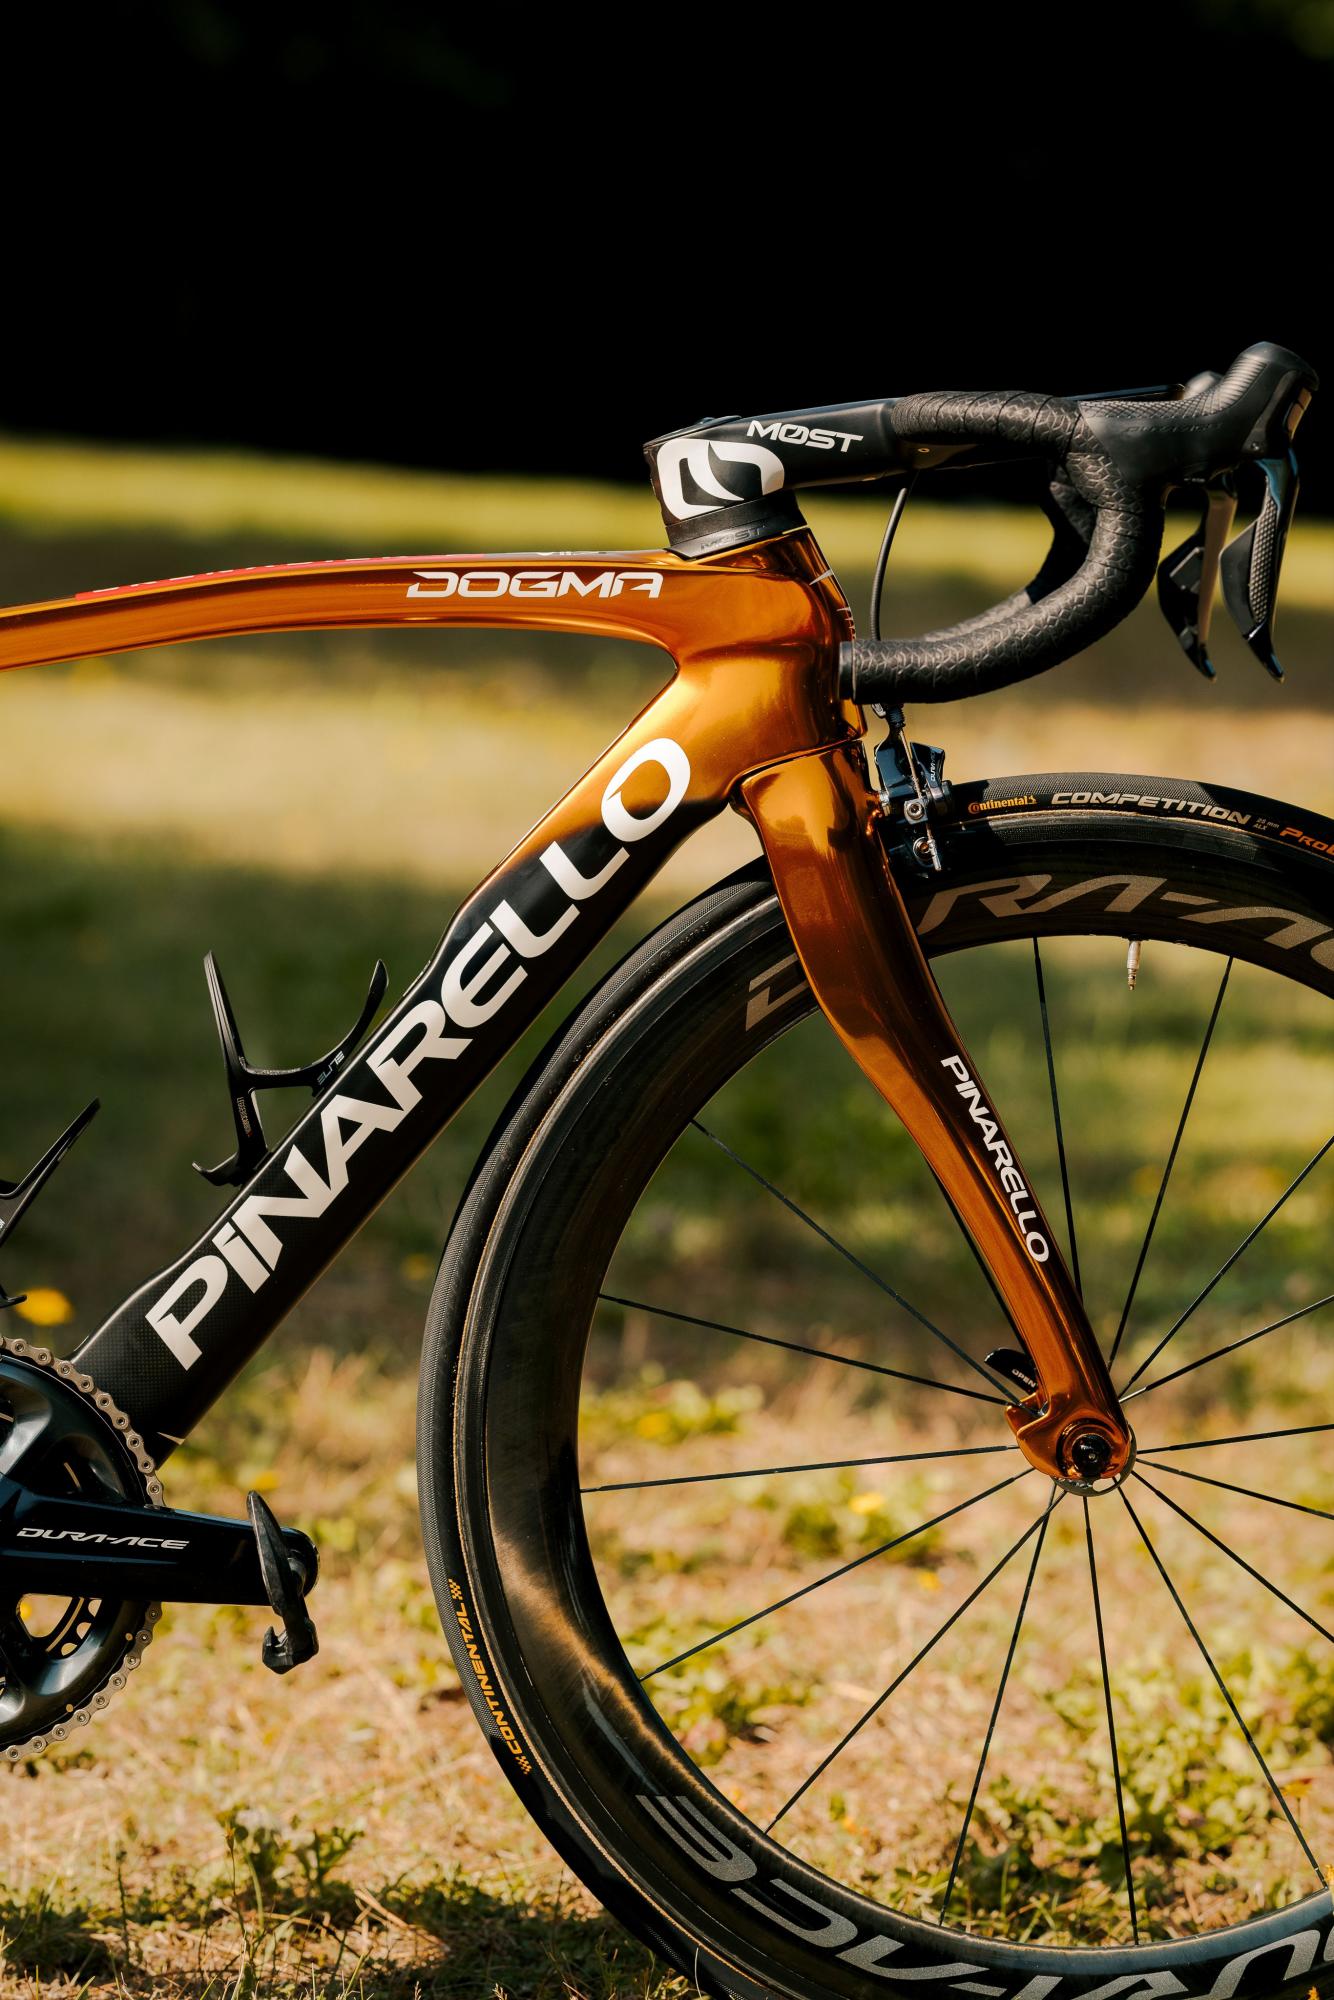 $!El campeón olímpico Richard Carapaz montará una bicicleta dorada en la Vuelta a España